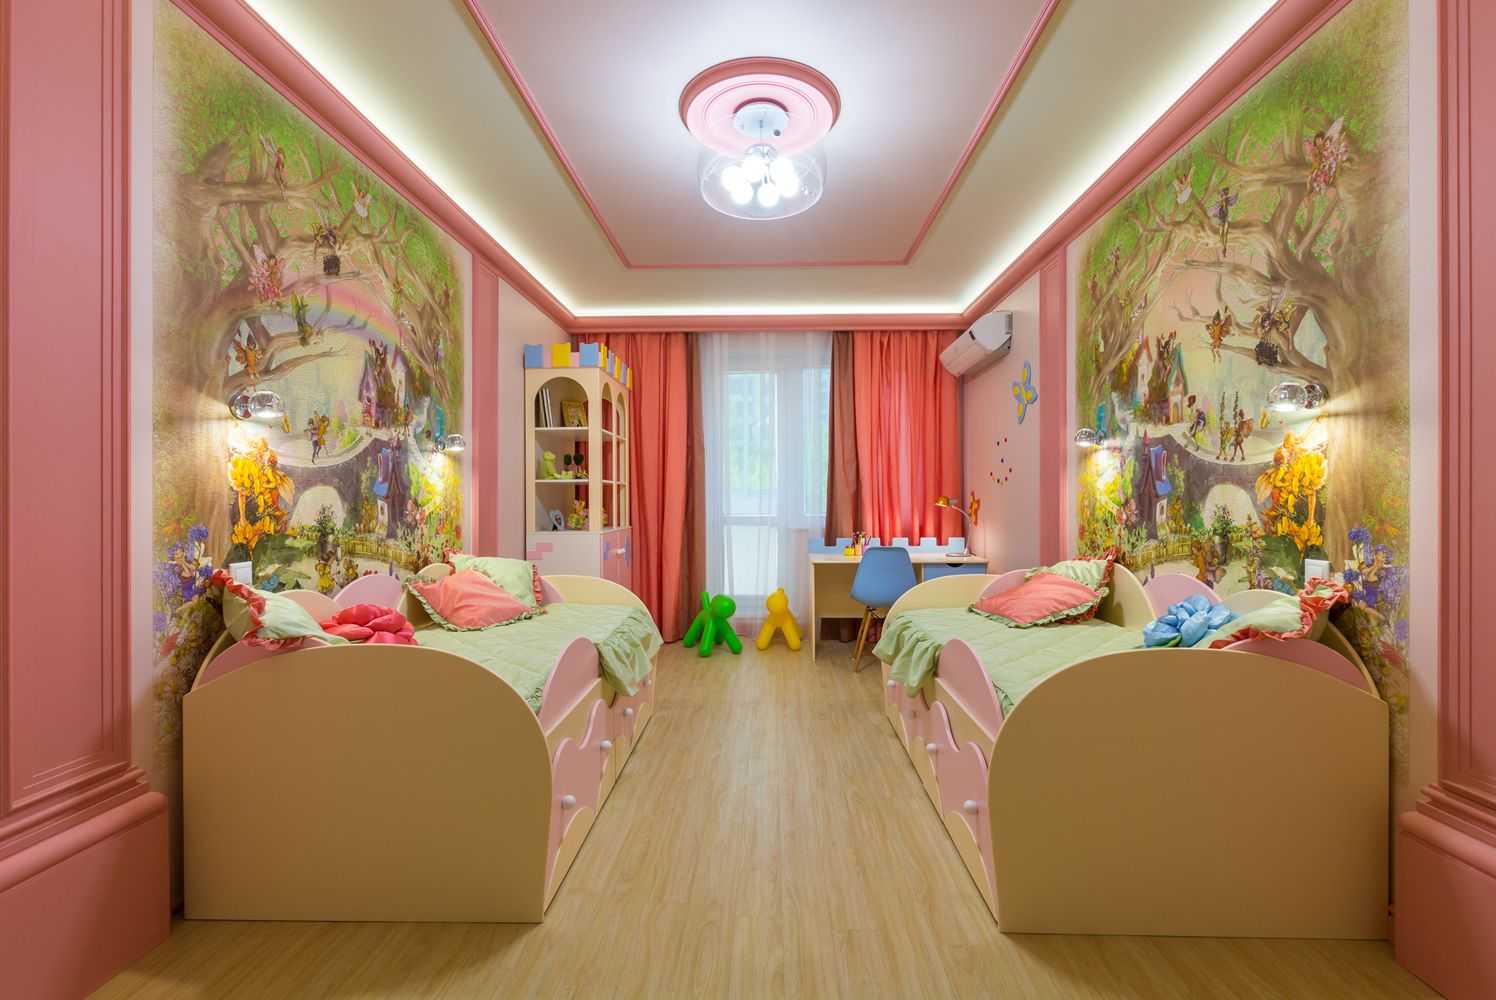 Ремонт детской комнаты для мальчика:фото, тема, интерьер, рекомендации